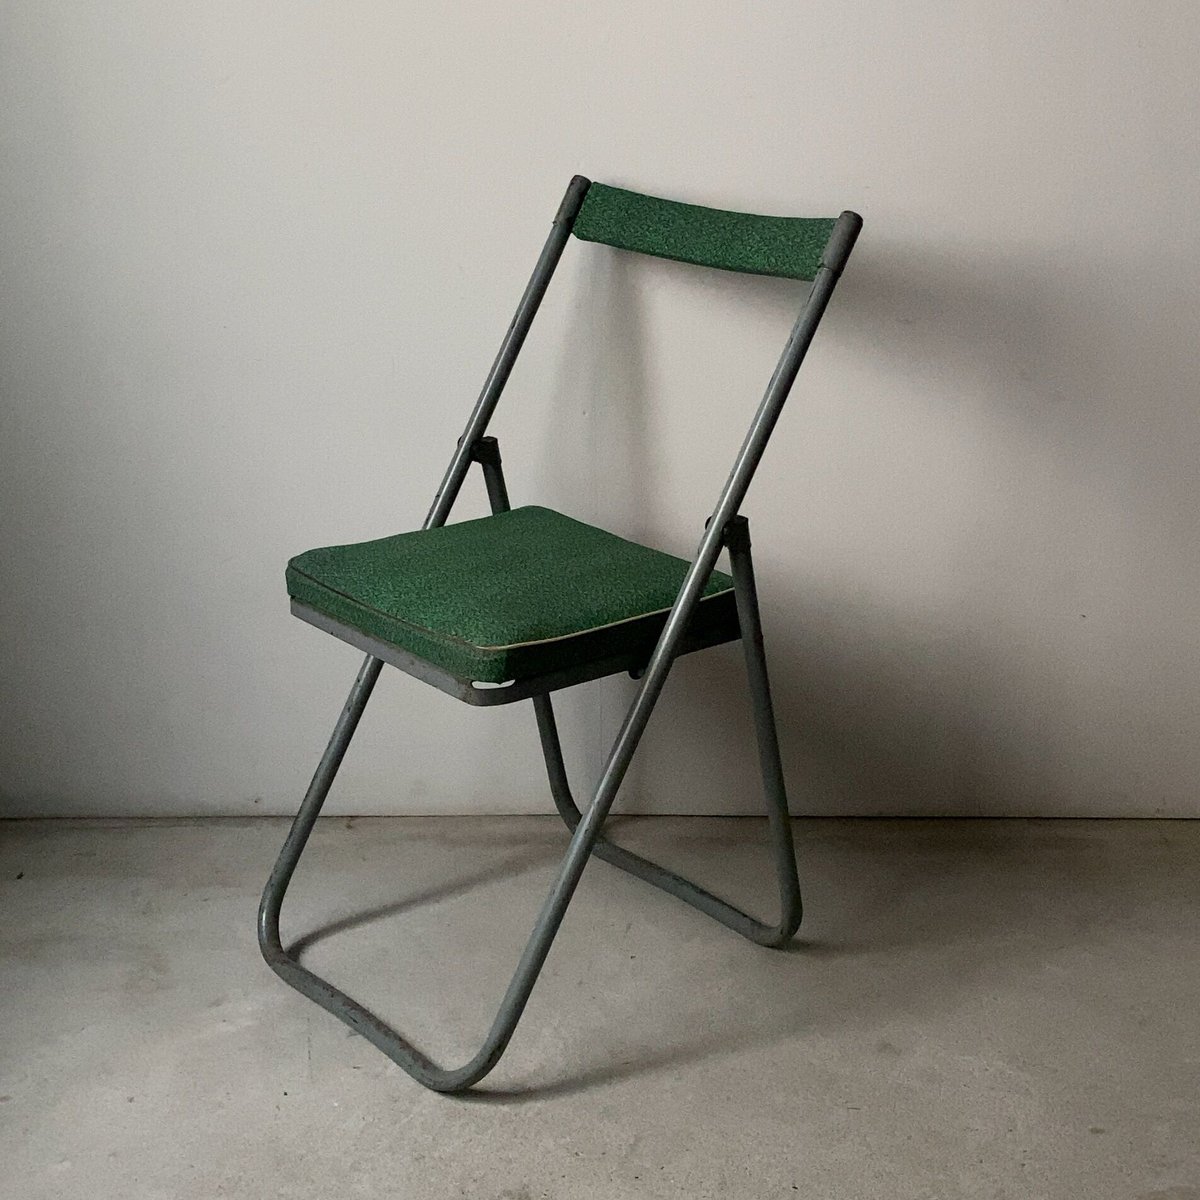 古い折り畳み椅子 1950-1960年代 ヴィンテージフォールディングチェア マイクロカモフラージュ柄 迷彩 グリーン/グレー 良品